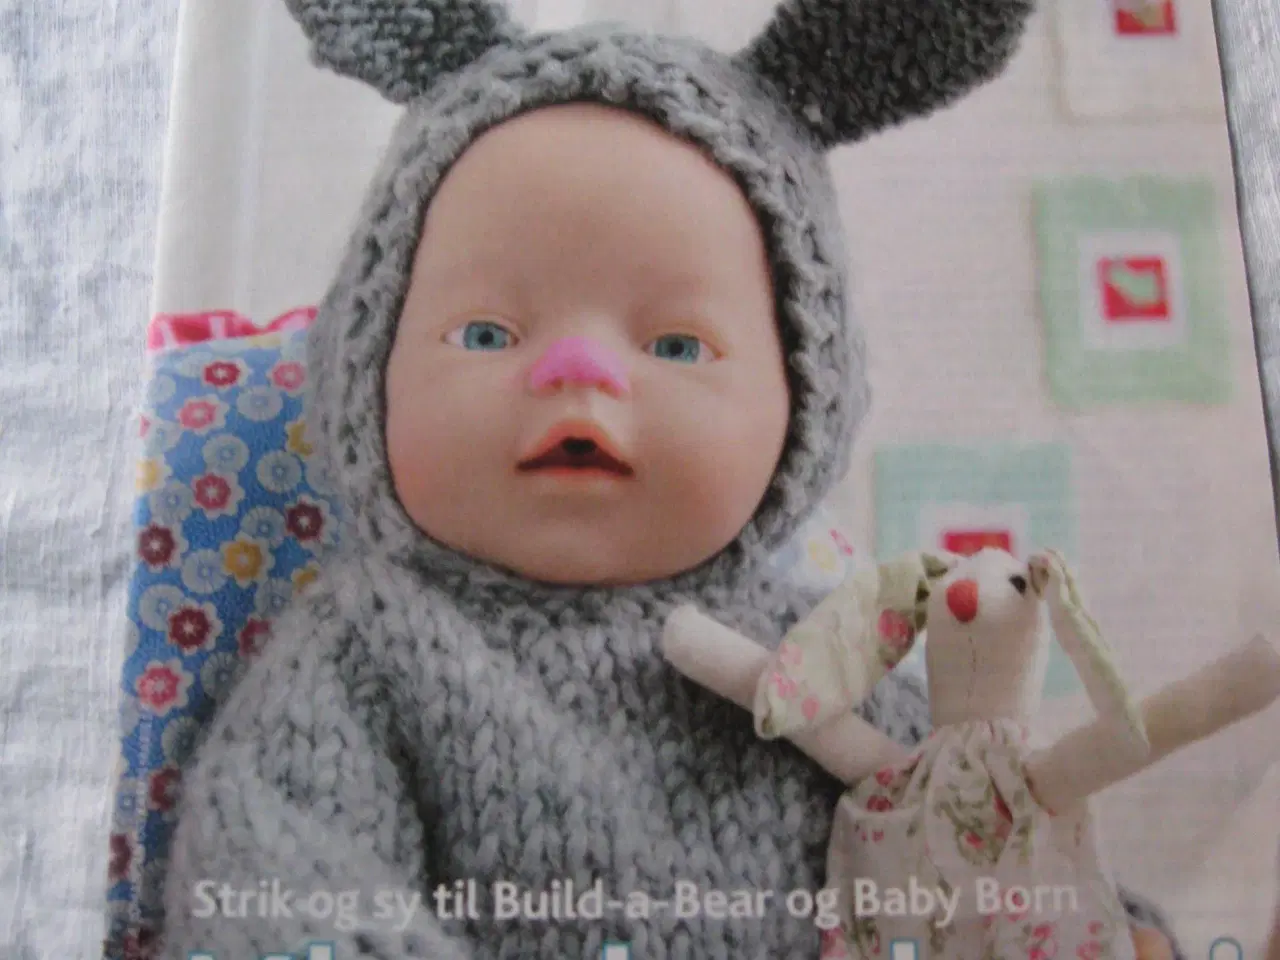 Billede 1 - Tøj til Build-a-Bear og Baby Born